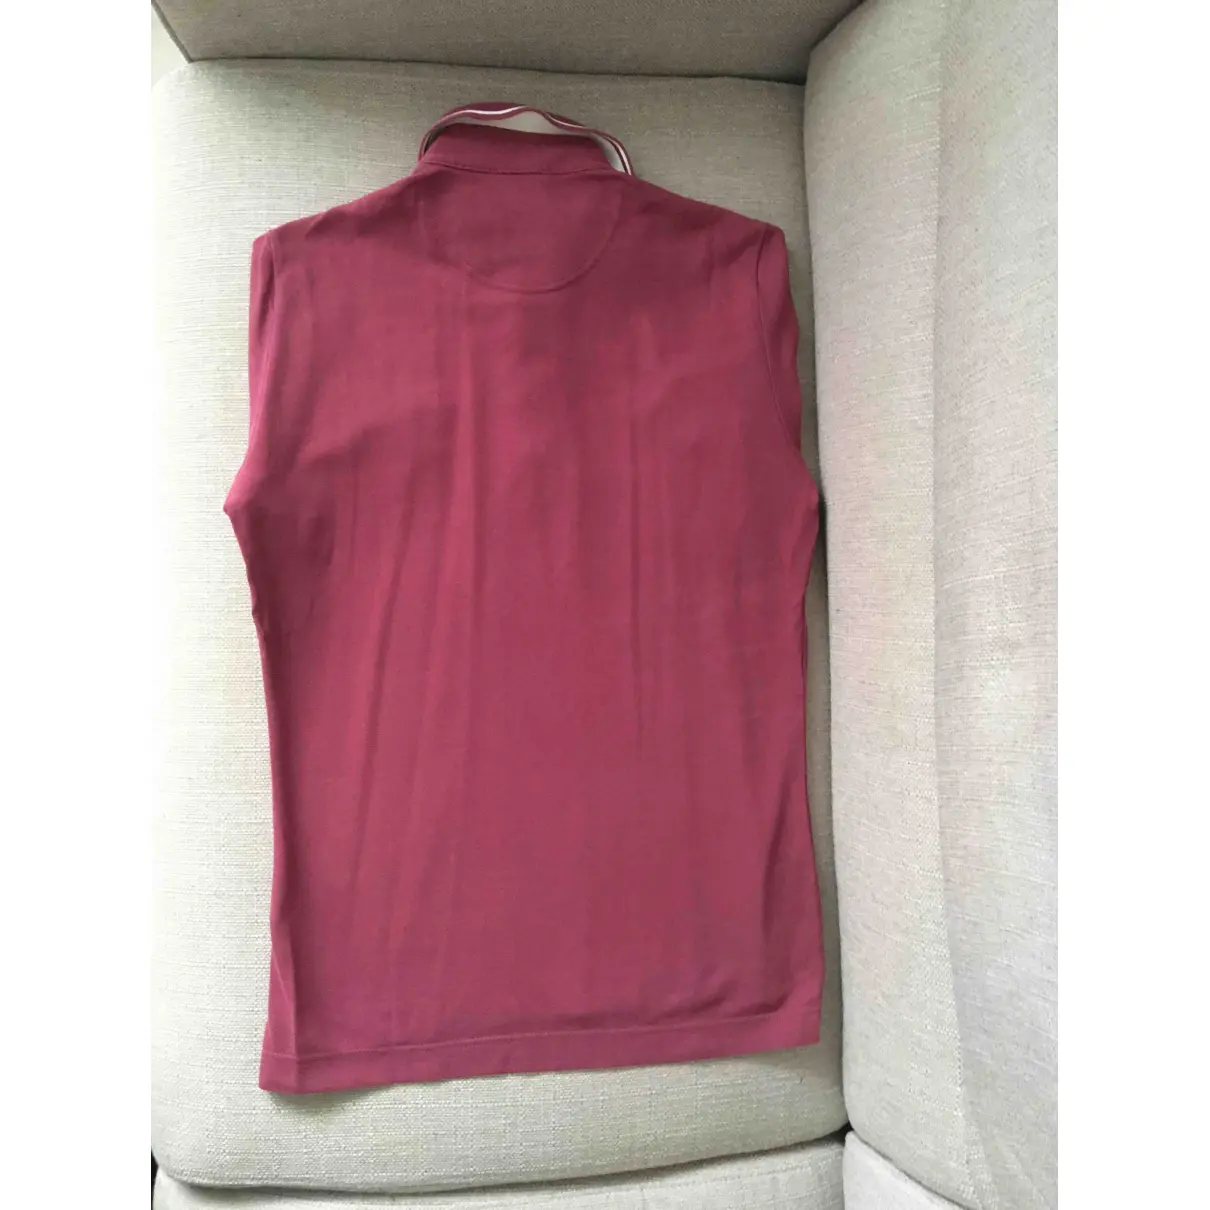 Buy Vivienne Westwood Purple Cotton T-shirt online